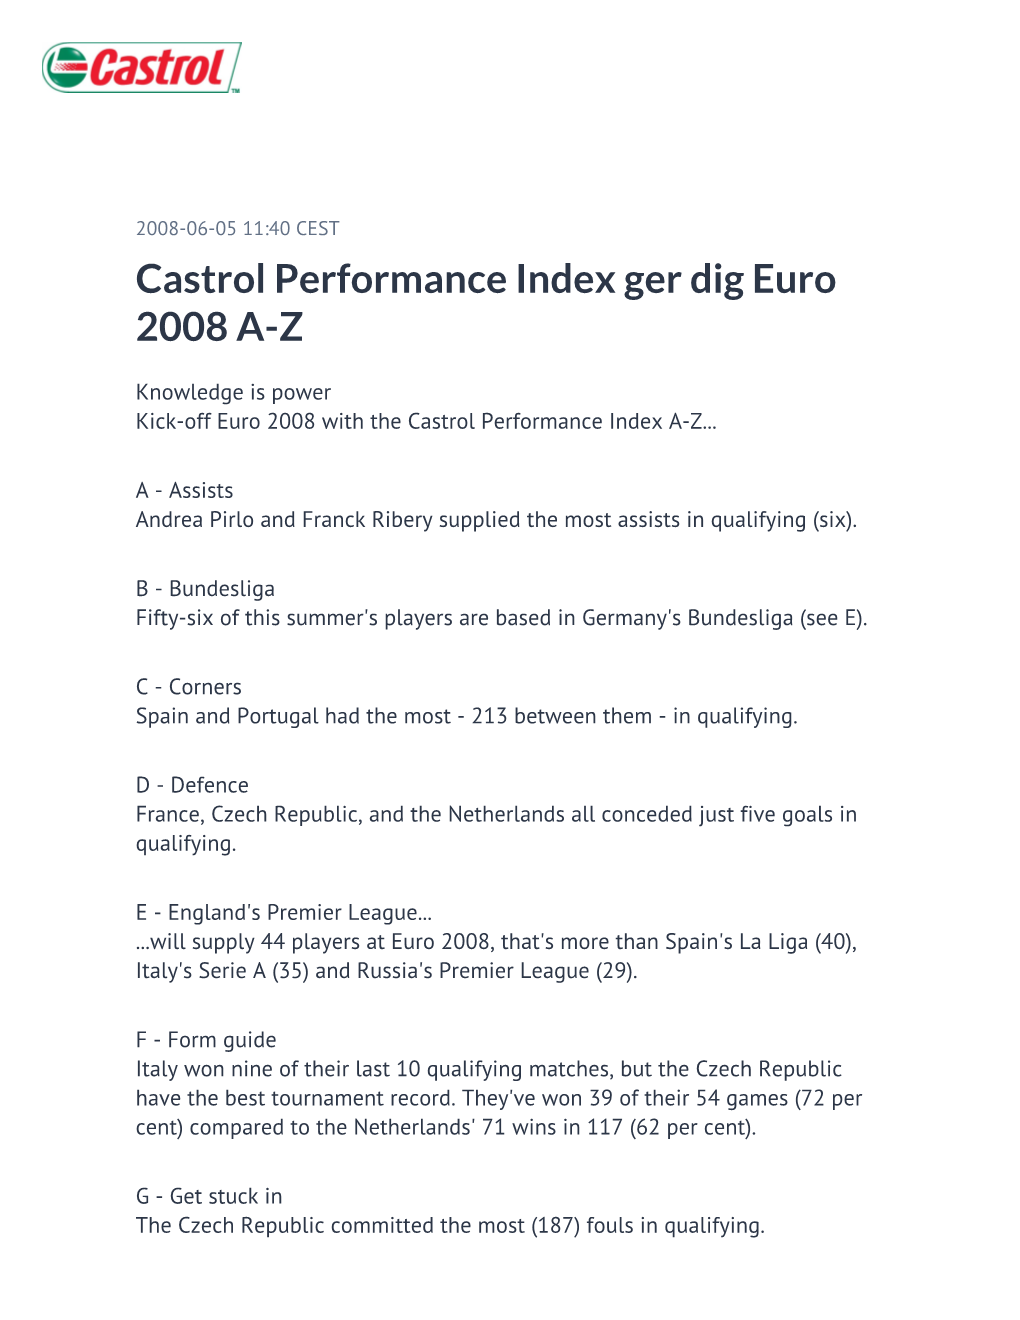 Castrol Performance Index Ger Dig Euro 2008 A-Z